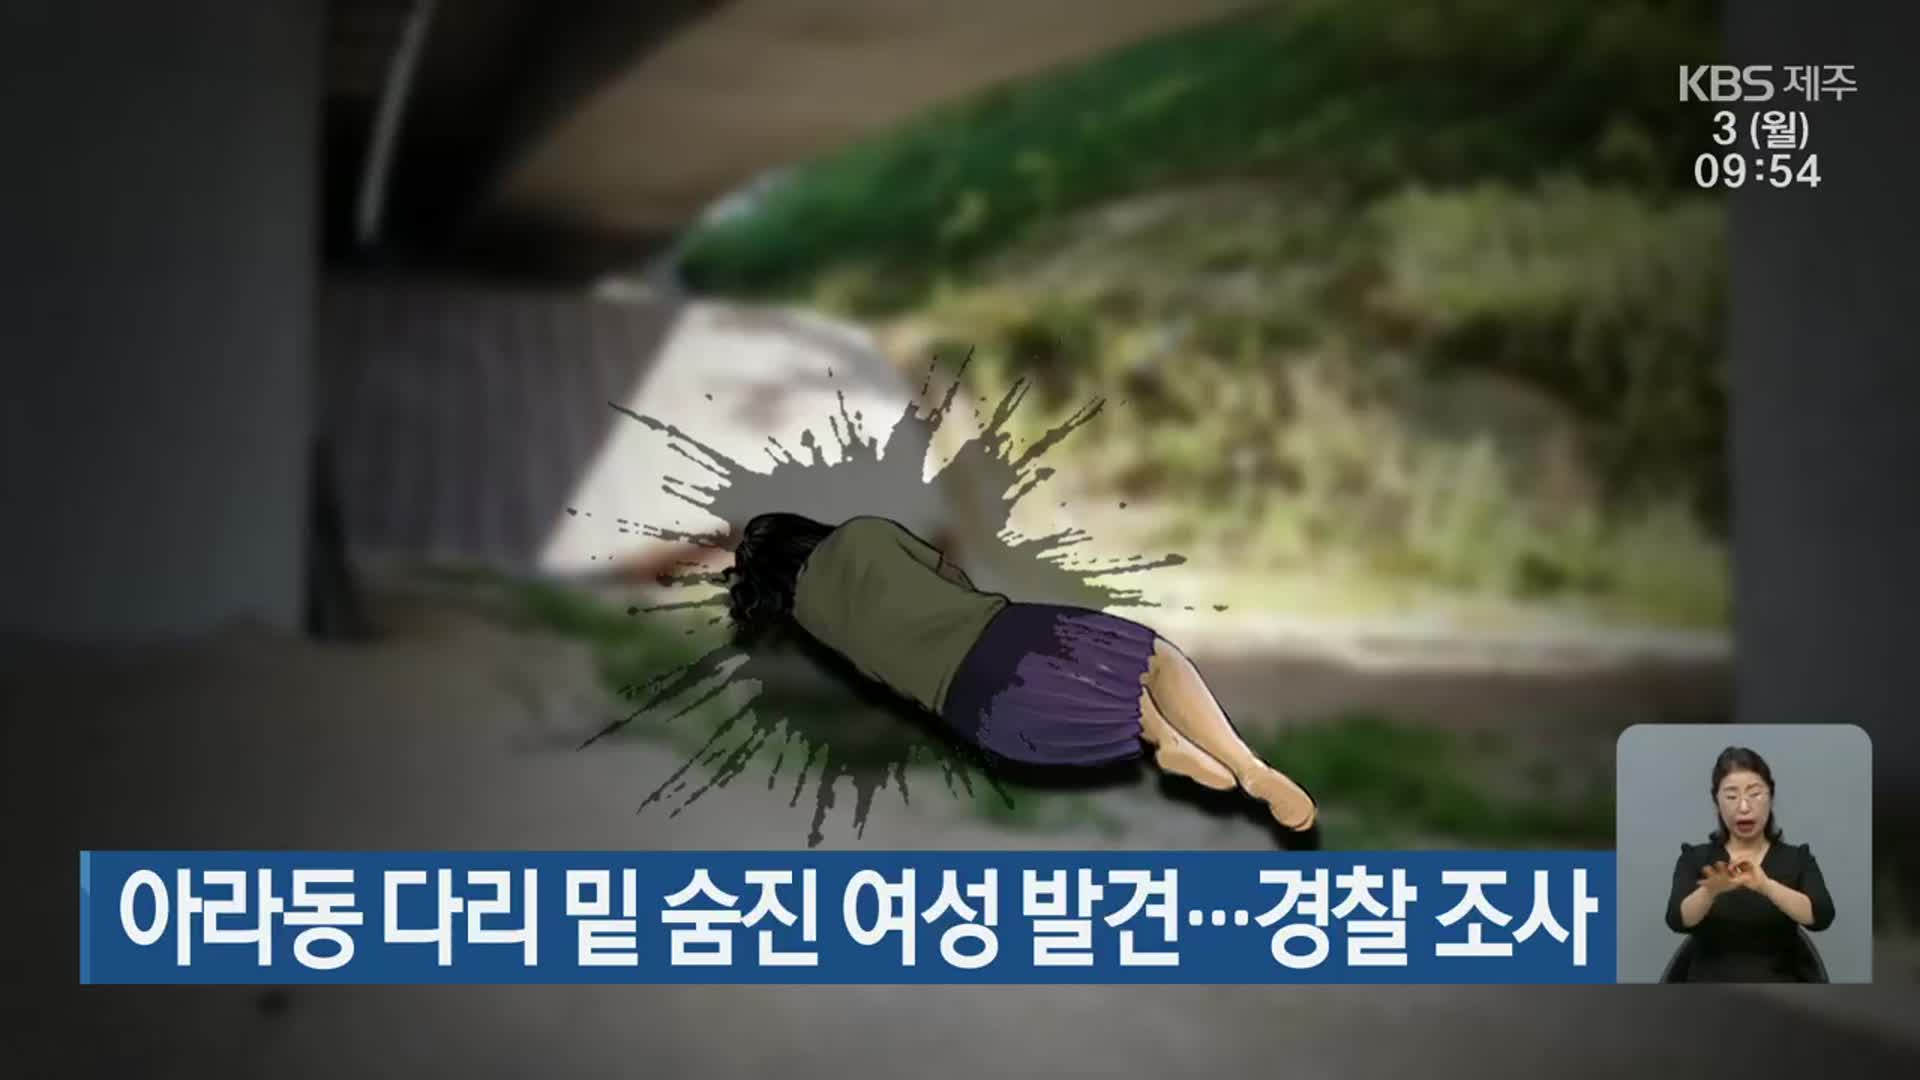 아라동 다리 밑 숨진 여성 발견…경찰 조사